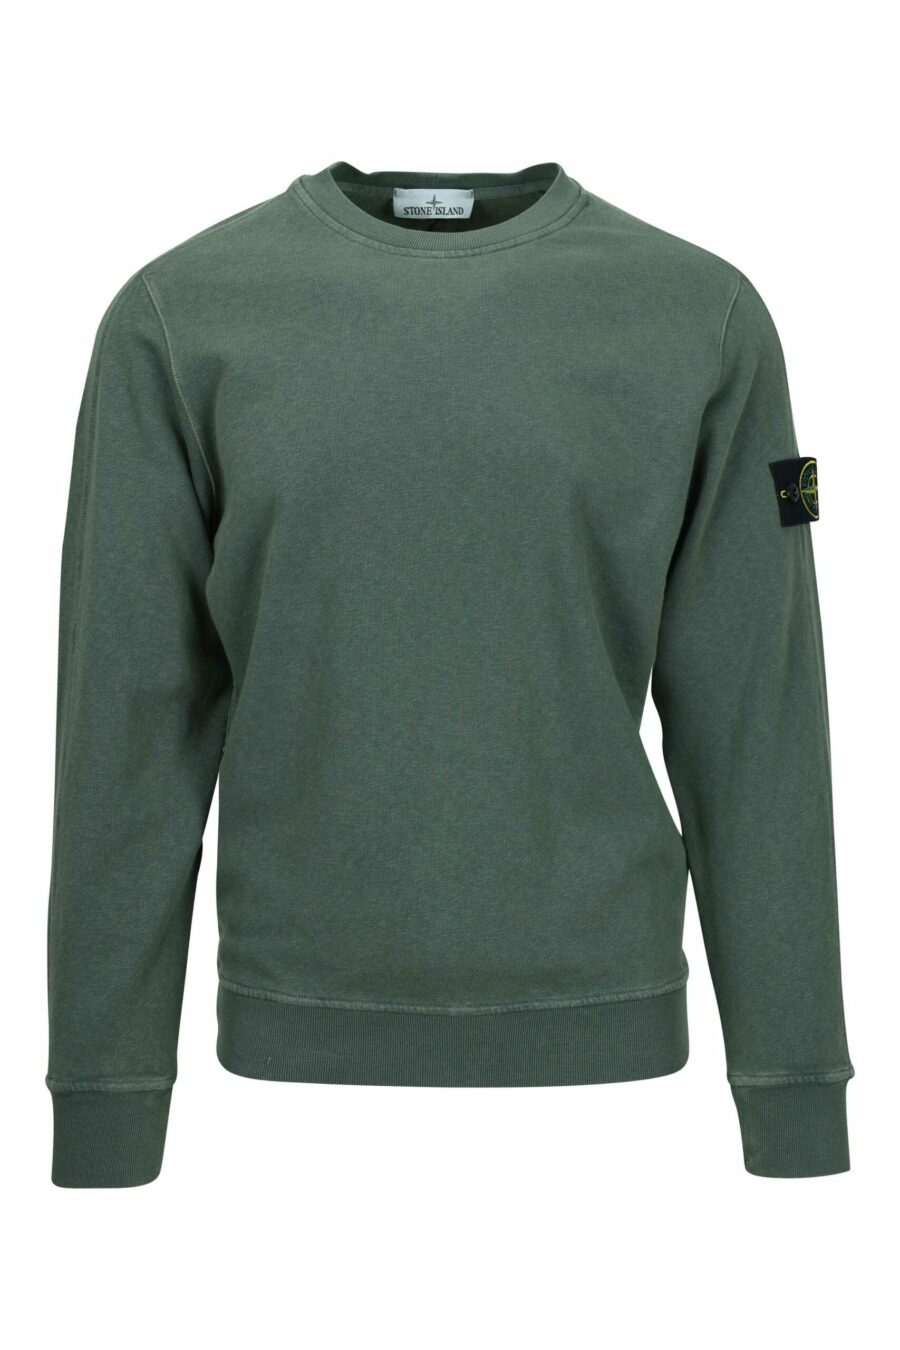 Militärgrünes Sweatshirt mit Kompass-Logoaufnäher - 8052572906923 skaliert